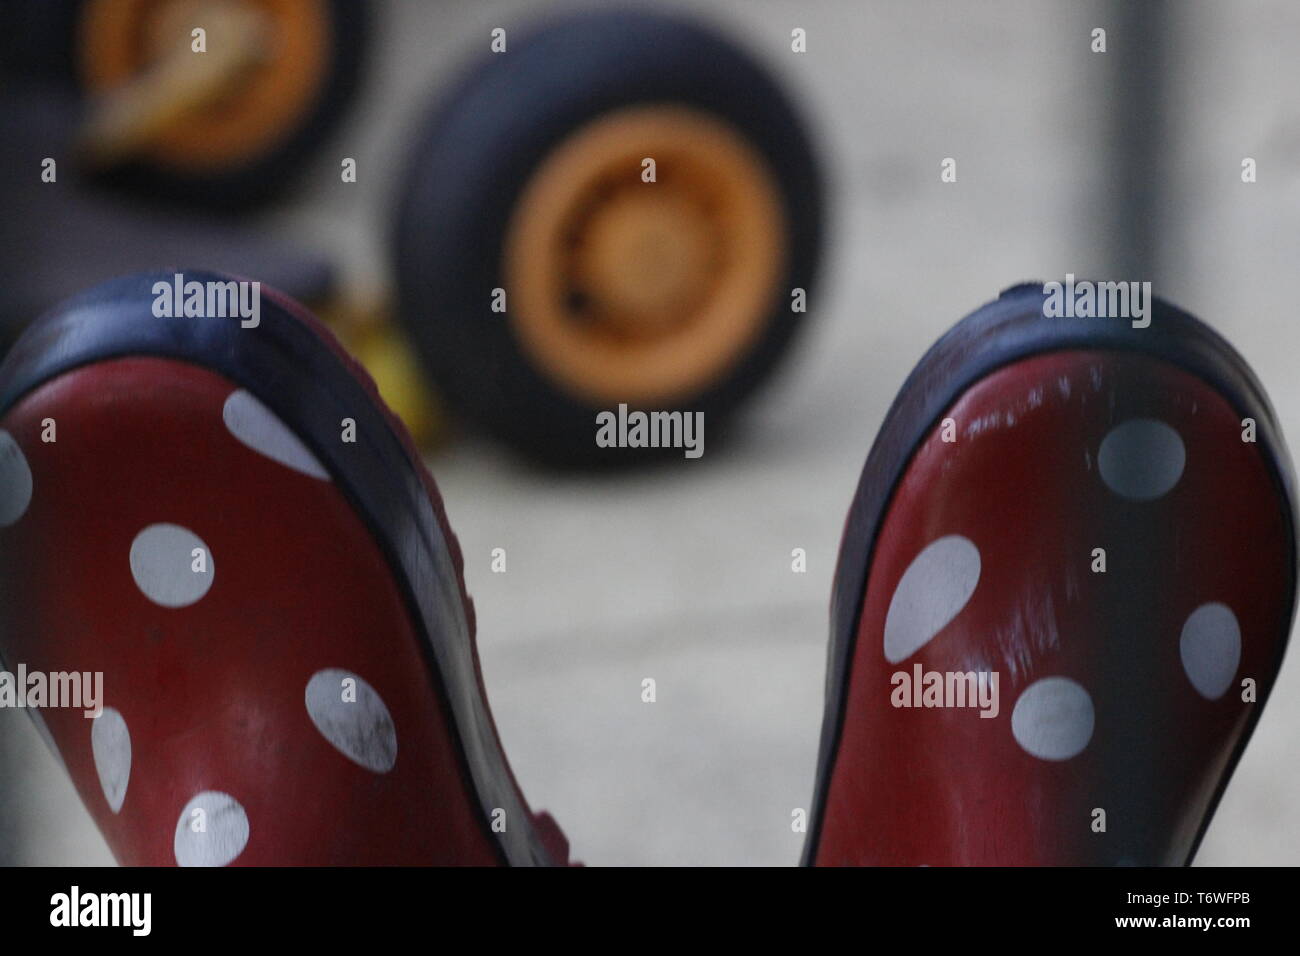 Image en couleur d'une vue rapprochée d'une paire de bottes pour enfants rouge à pois blancs. dans l'arrière-plan est un pneu jaune à partir d'un jouet. Banque D'Images